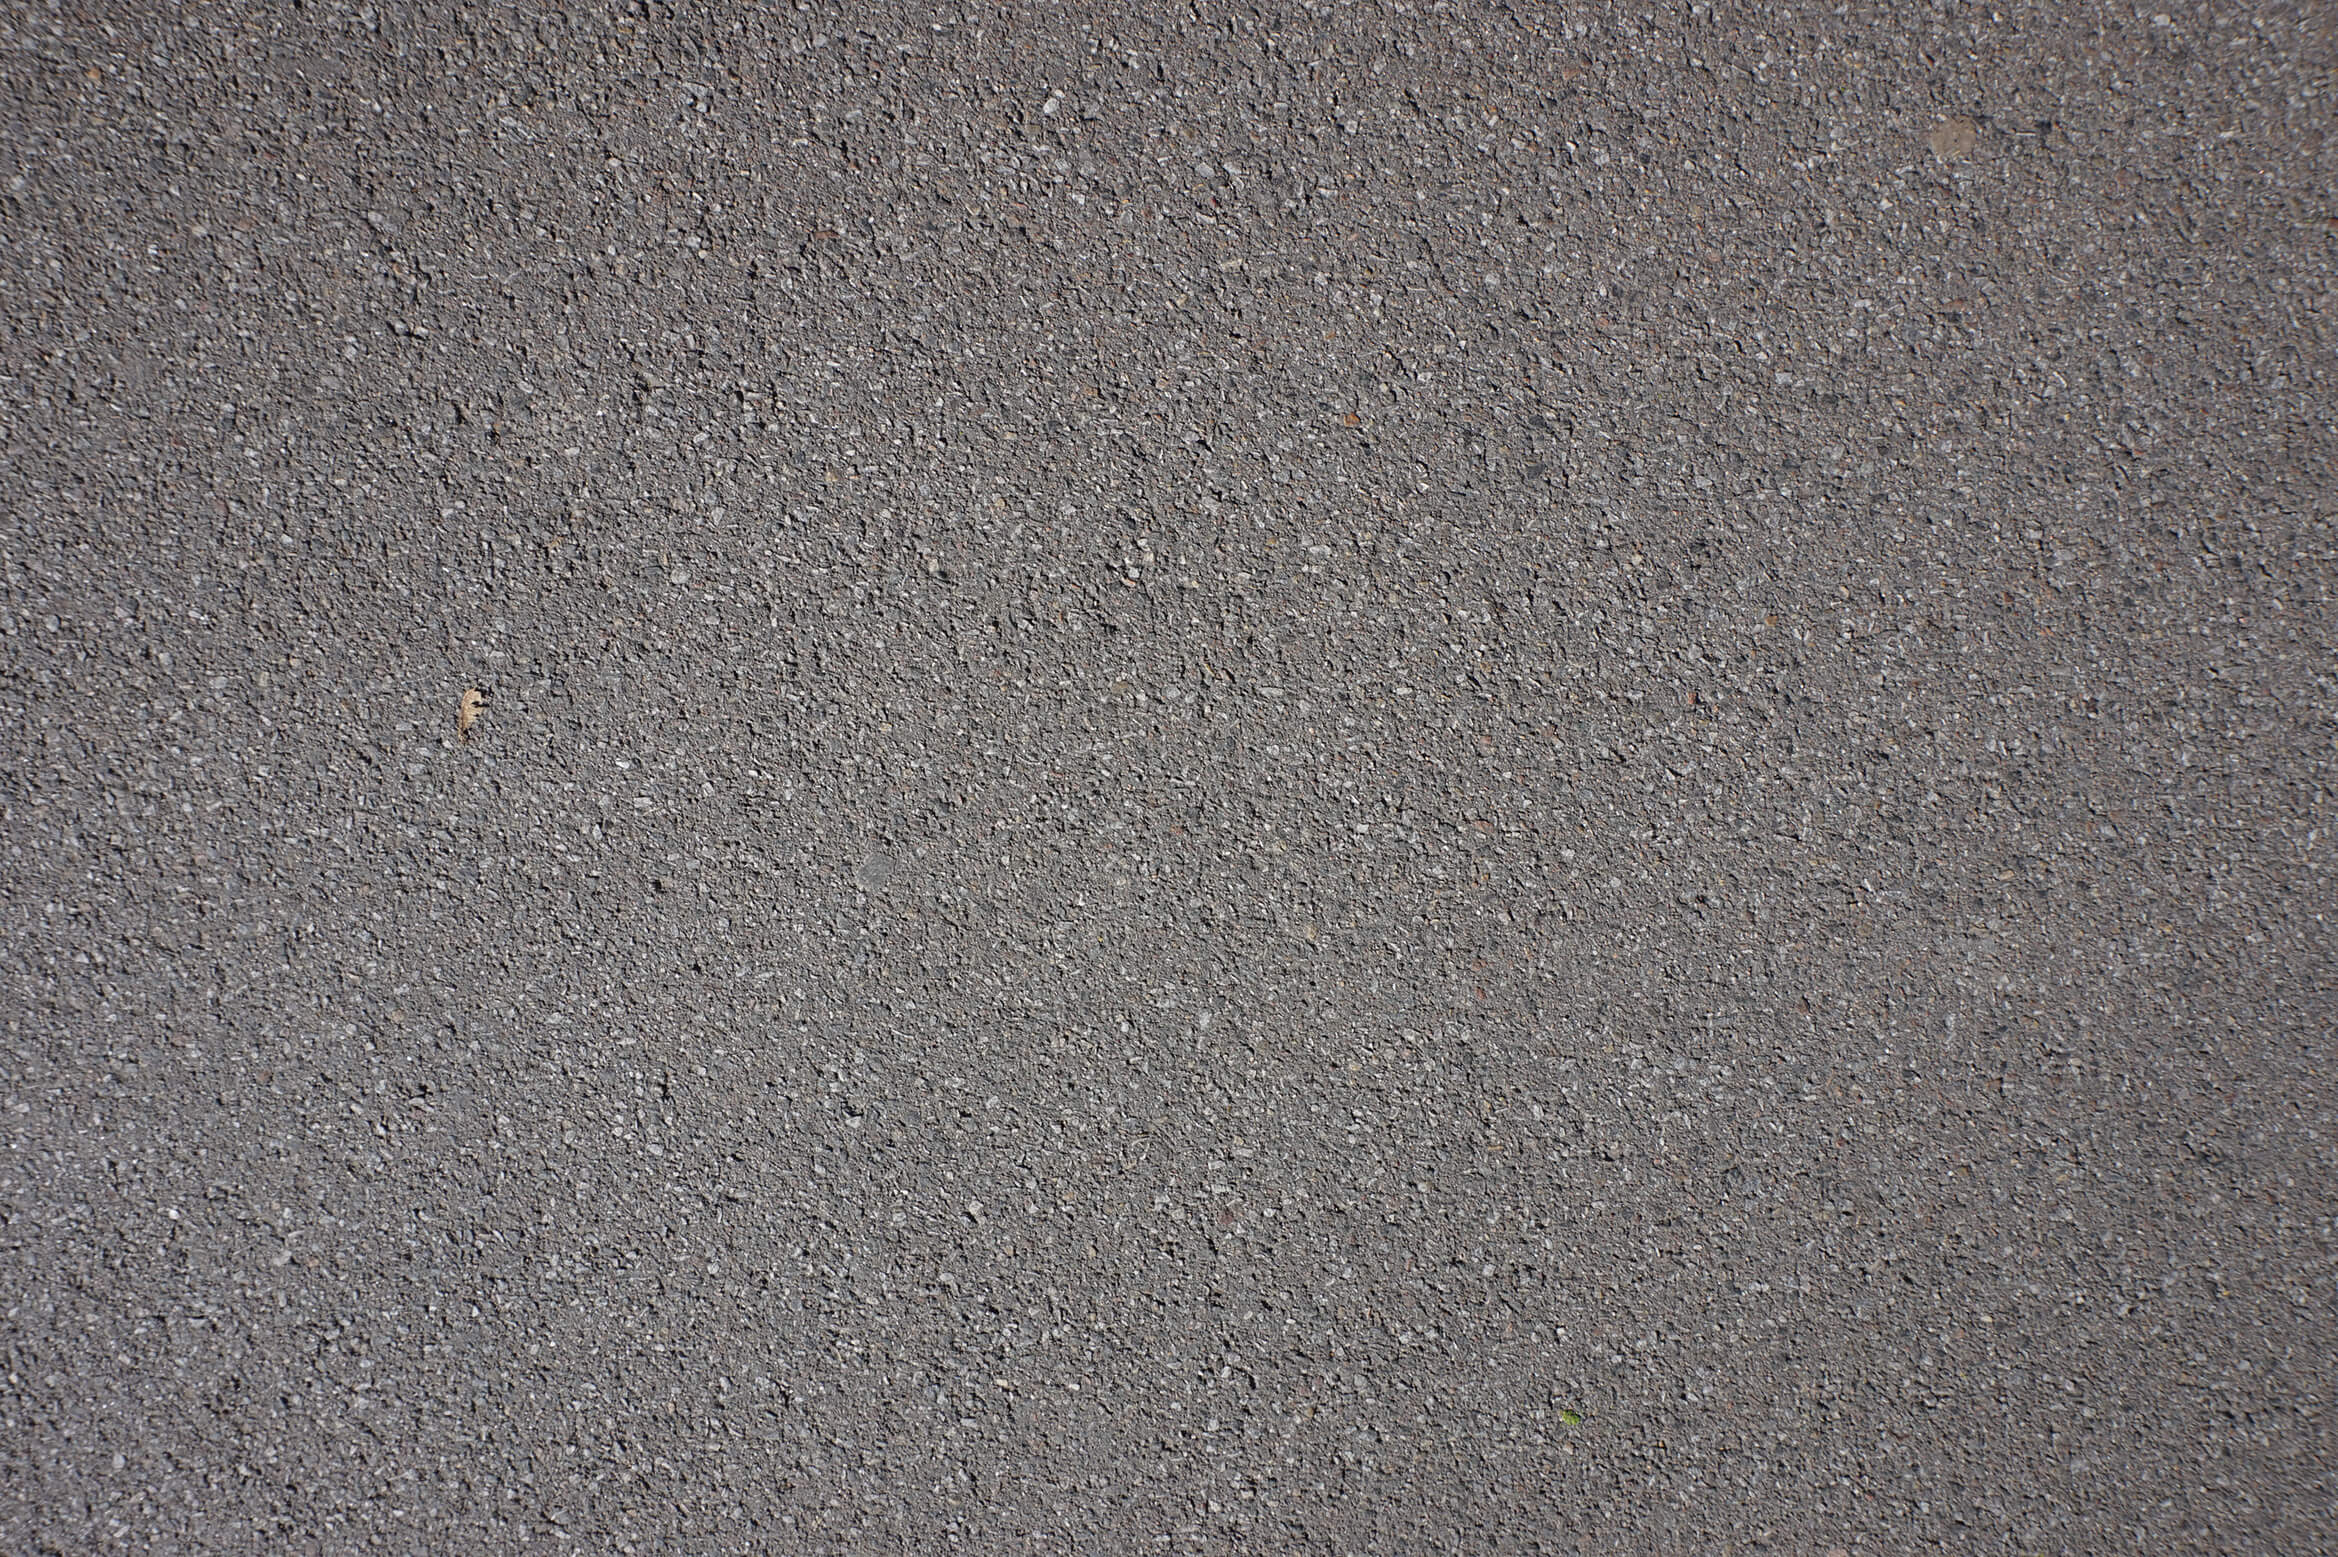 pavement-asphalt-road-surface-line-tar-concrete-1418122-pxhere.com_